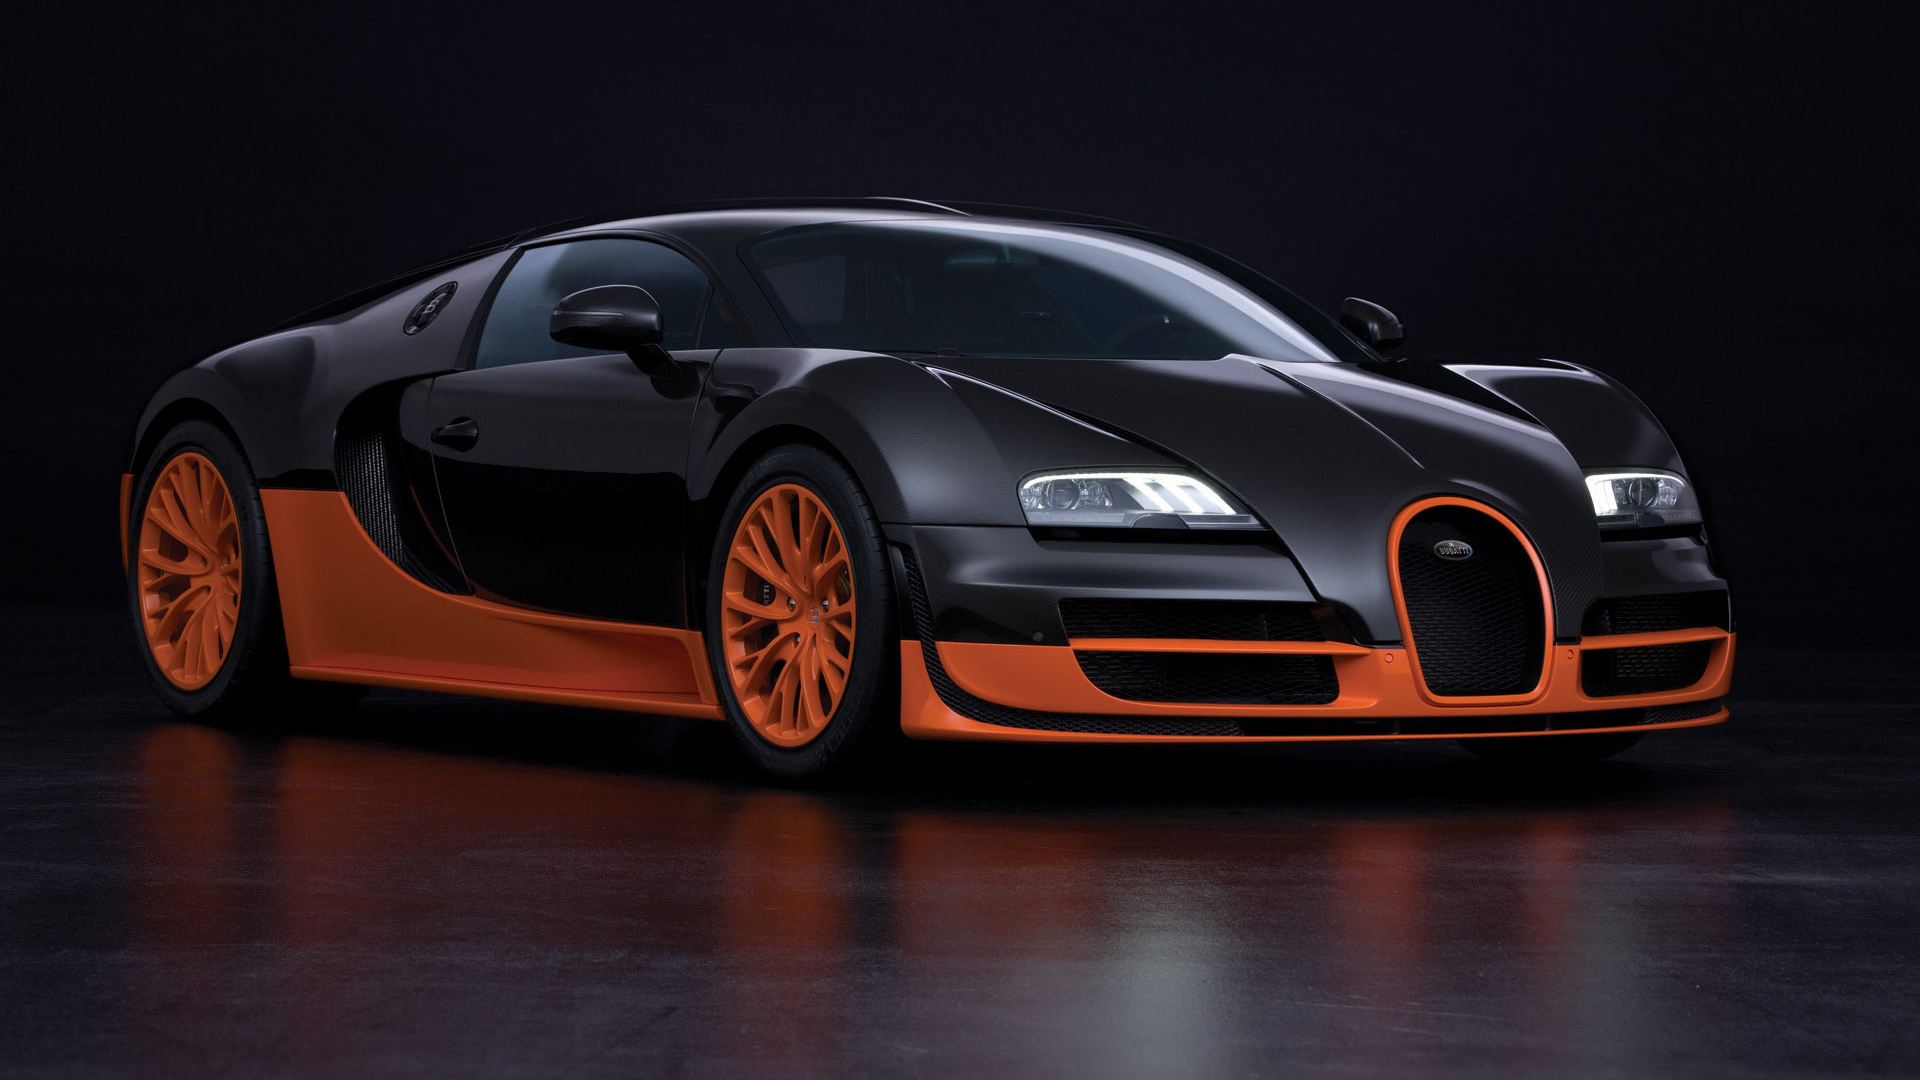 Wallpaper Of Bugatti